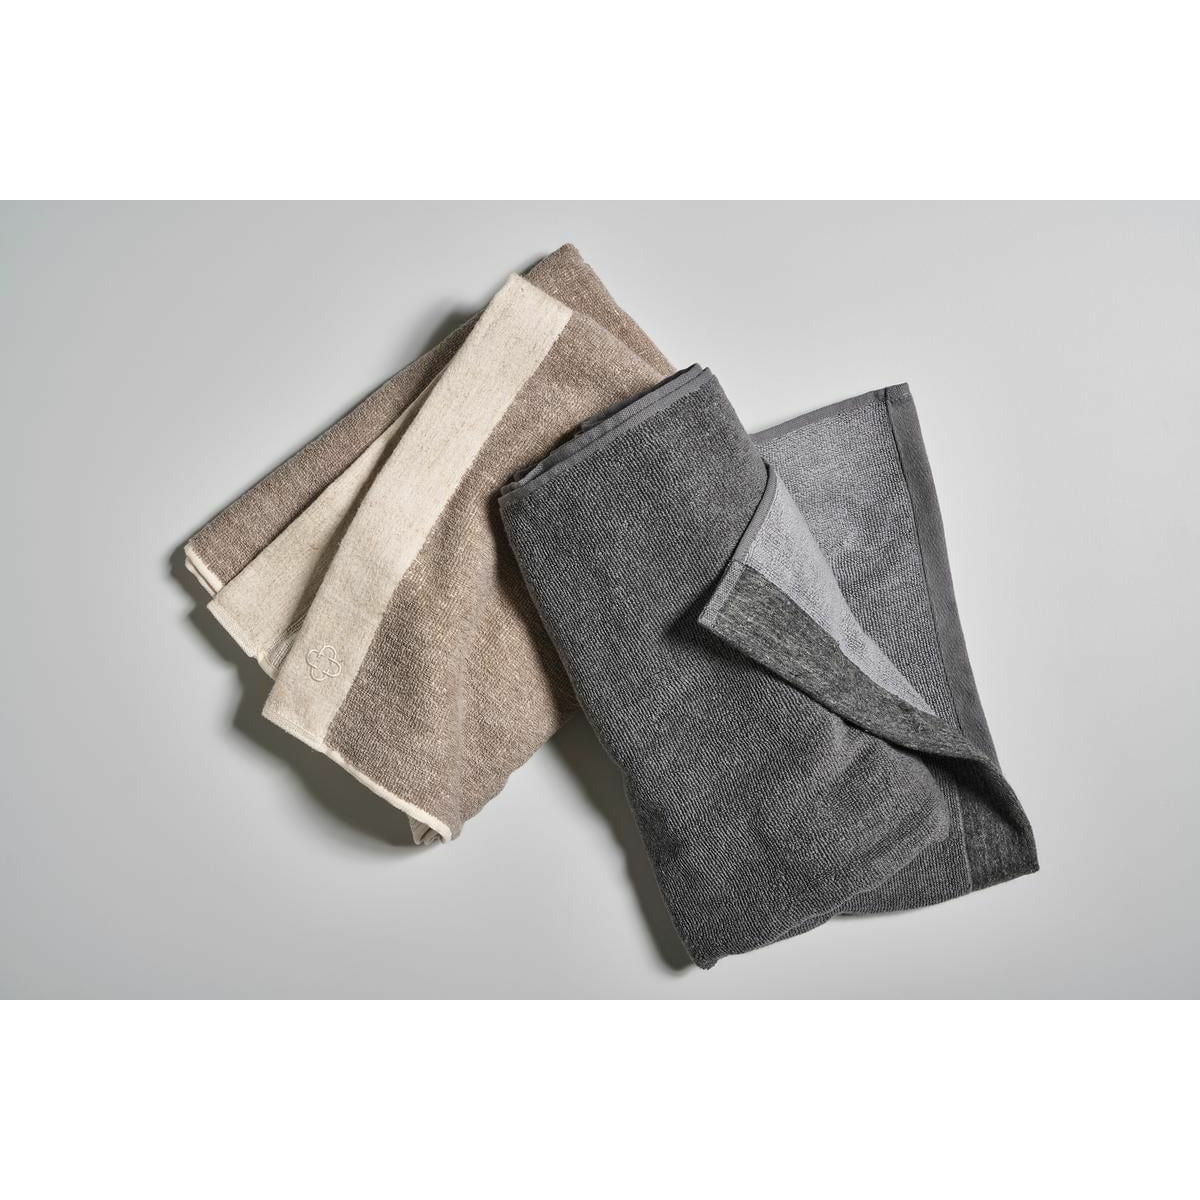 Zone Denmark Inu spa håndklæde 140 x70 cm, grå